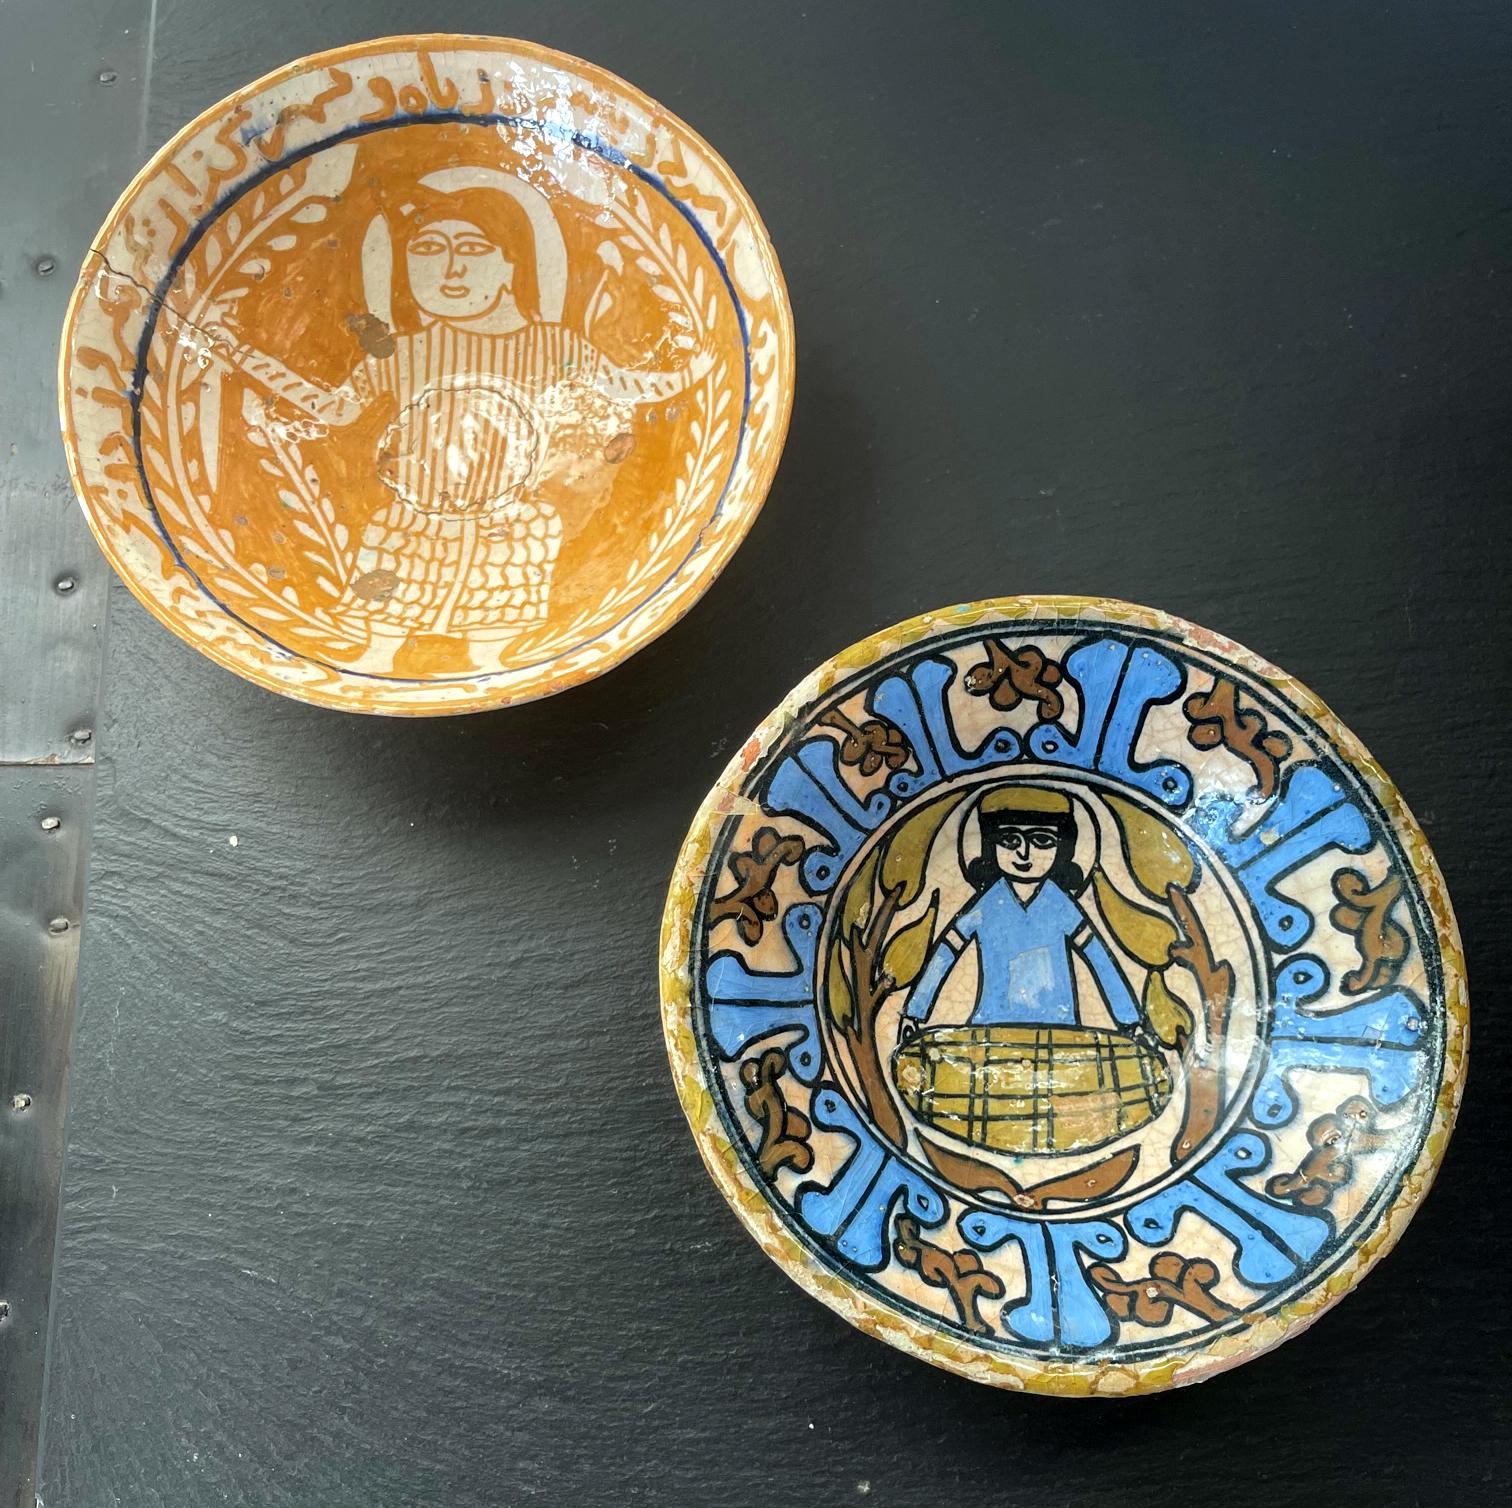 Une collection de deux petits bols en poterie avec des décorations figuratives centrales polychromes, de taille assortie et de forme conique similaire. Ces bols sont identifiés comme étant de la céramique de Nishapur vers le 10e siècle (dans l'Iran